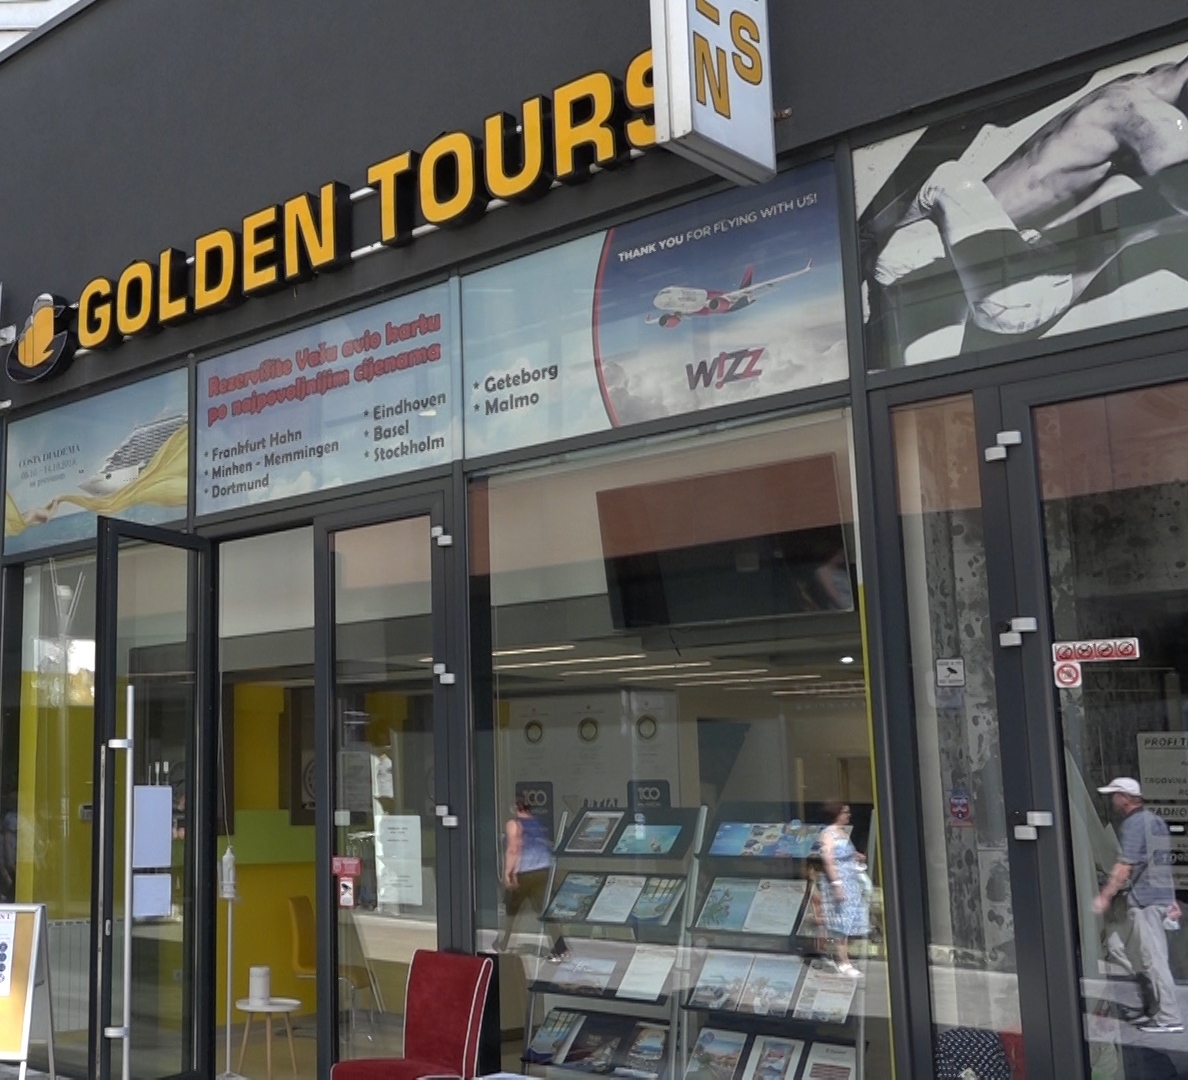 golden tours portal